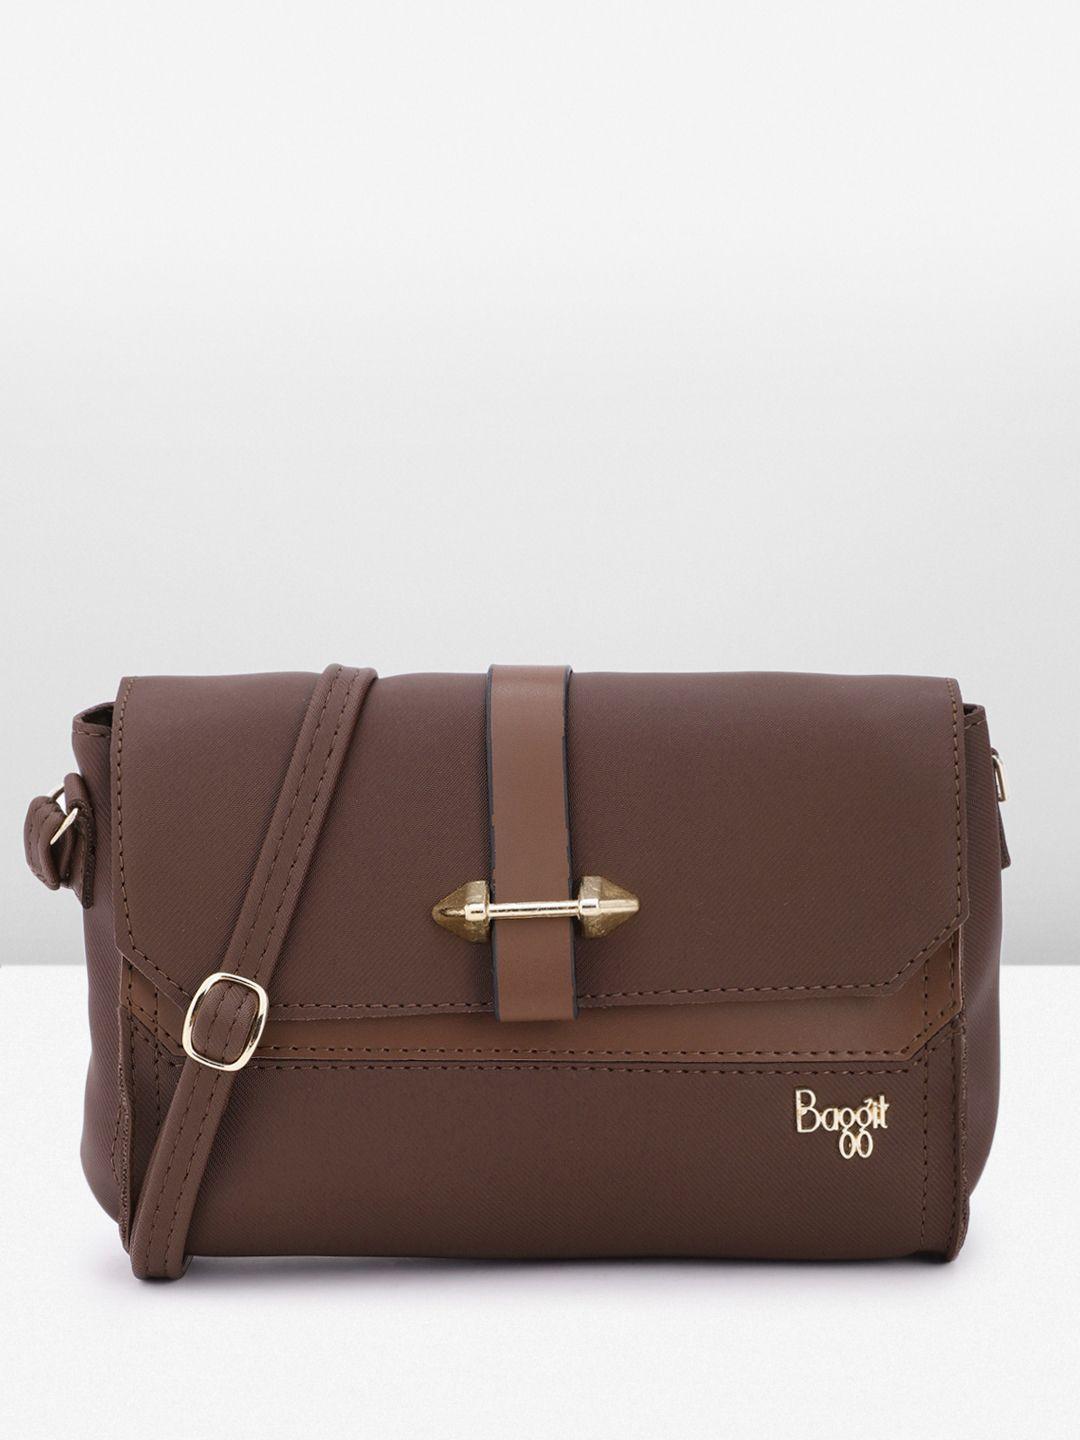 baggit structured sling bag